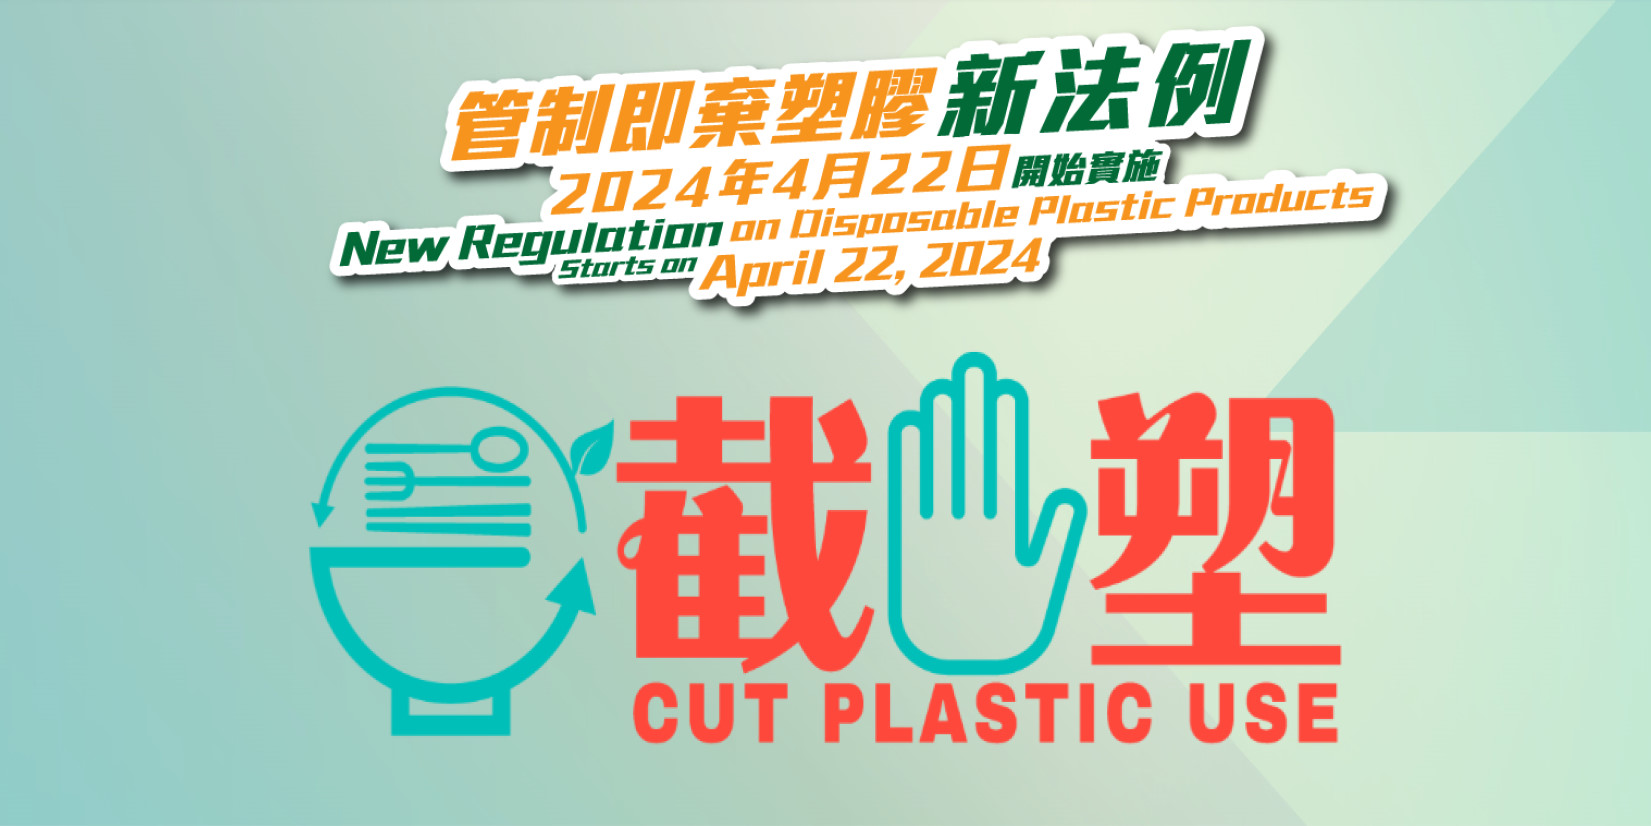 Cut Plastic Use